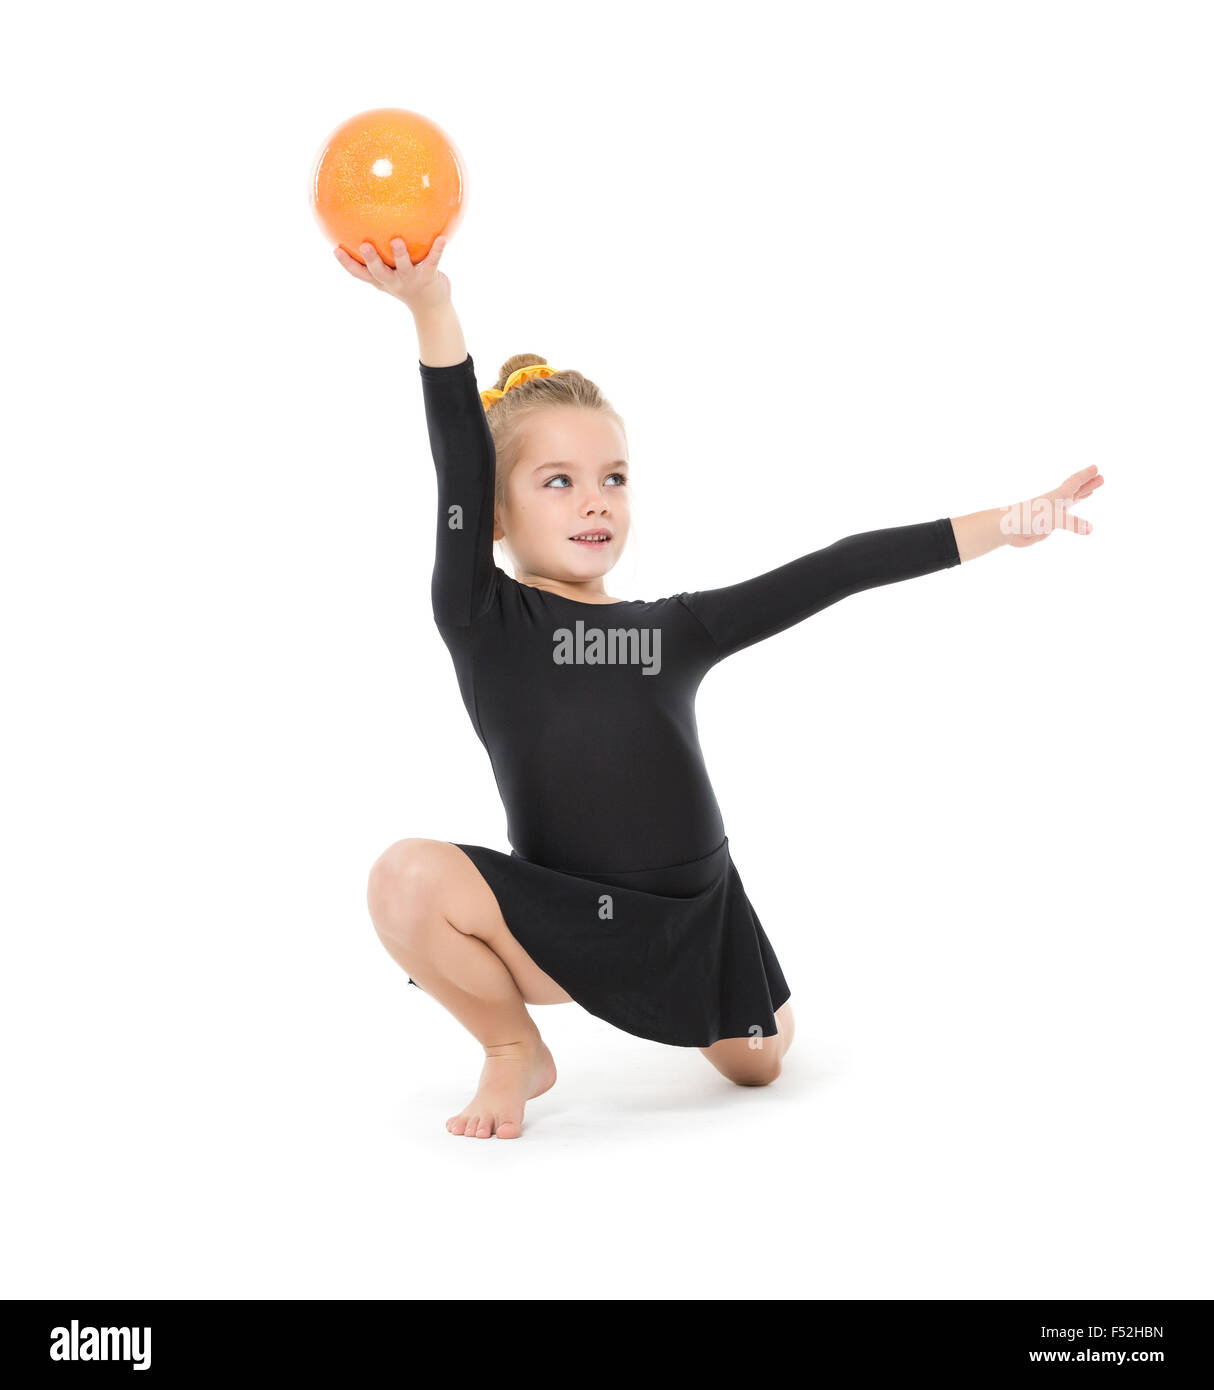 Gymnaste peu pratiquant avec un ballon, sur fond blanc Banque D'Images